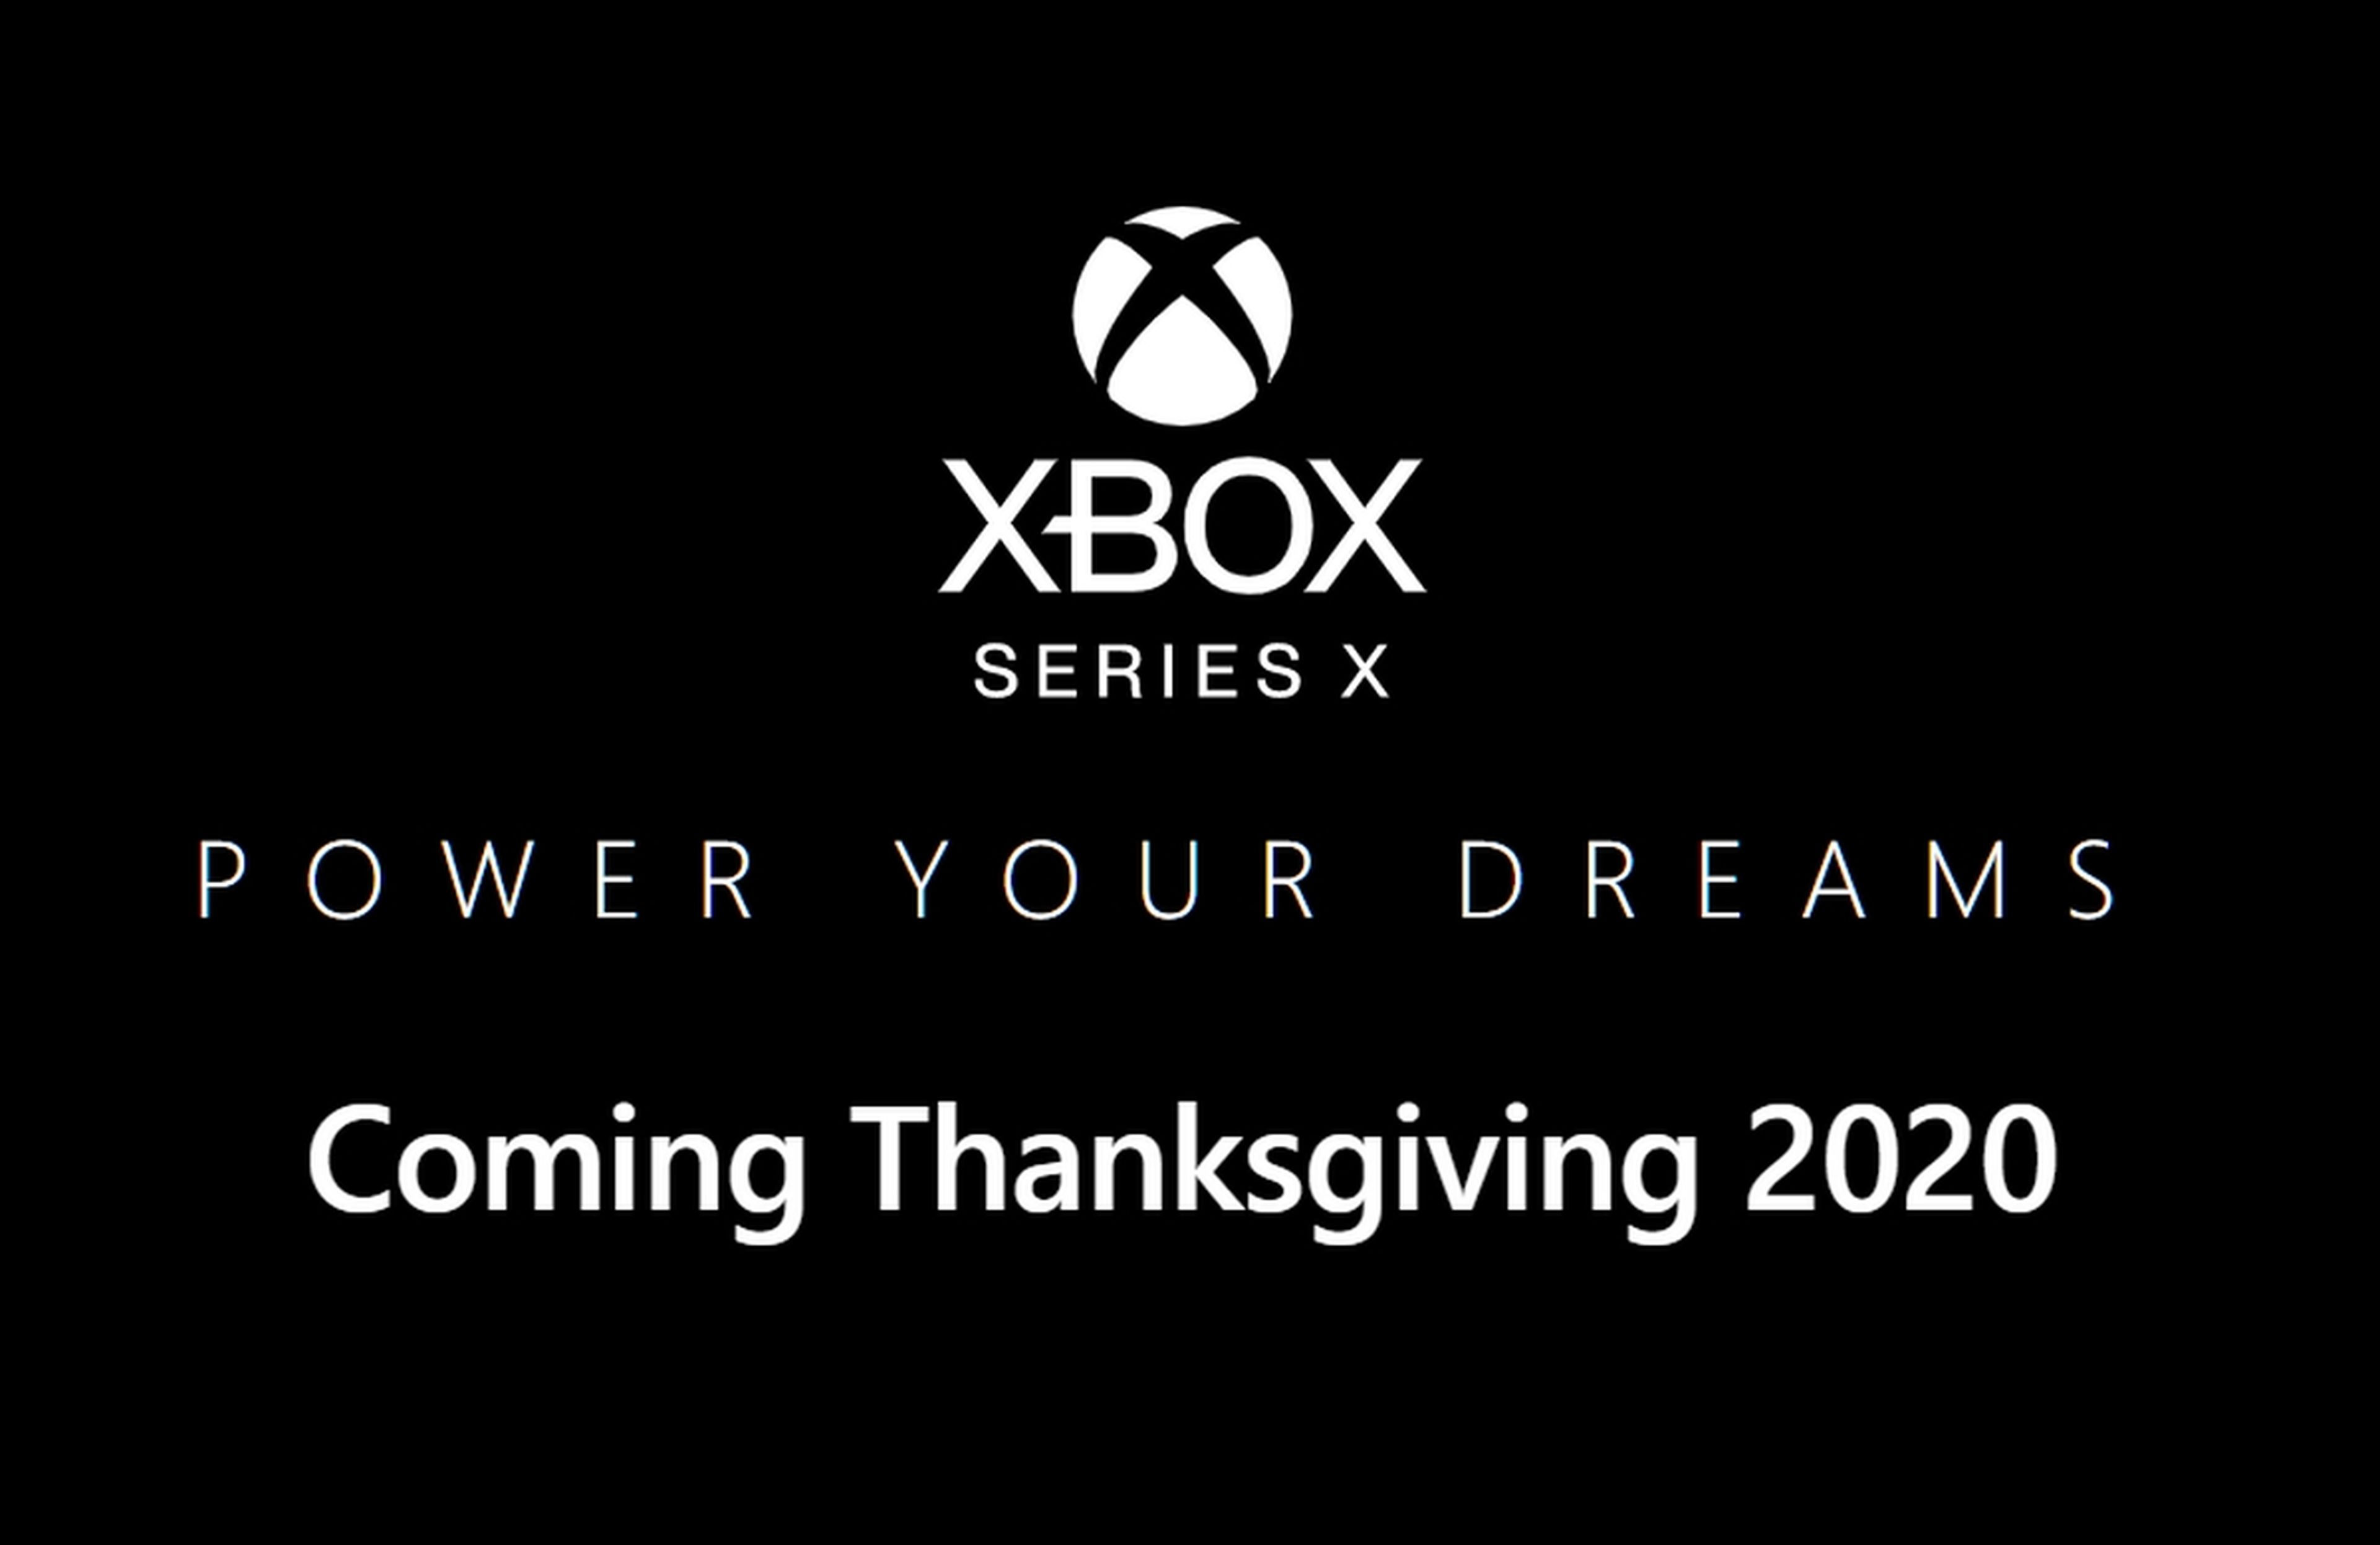 Xbox Series X ya tiene fecha de lanzamiento: saldrá en Acción de Gracias, posiblemente el 26 de noviembre